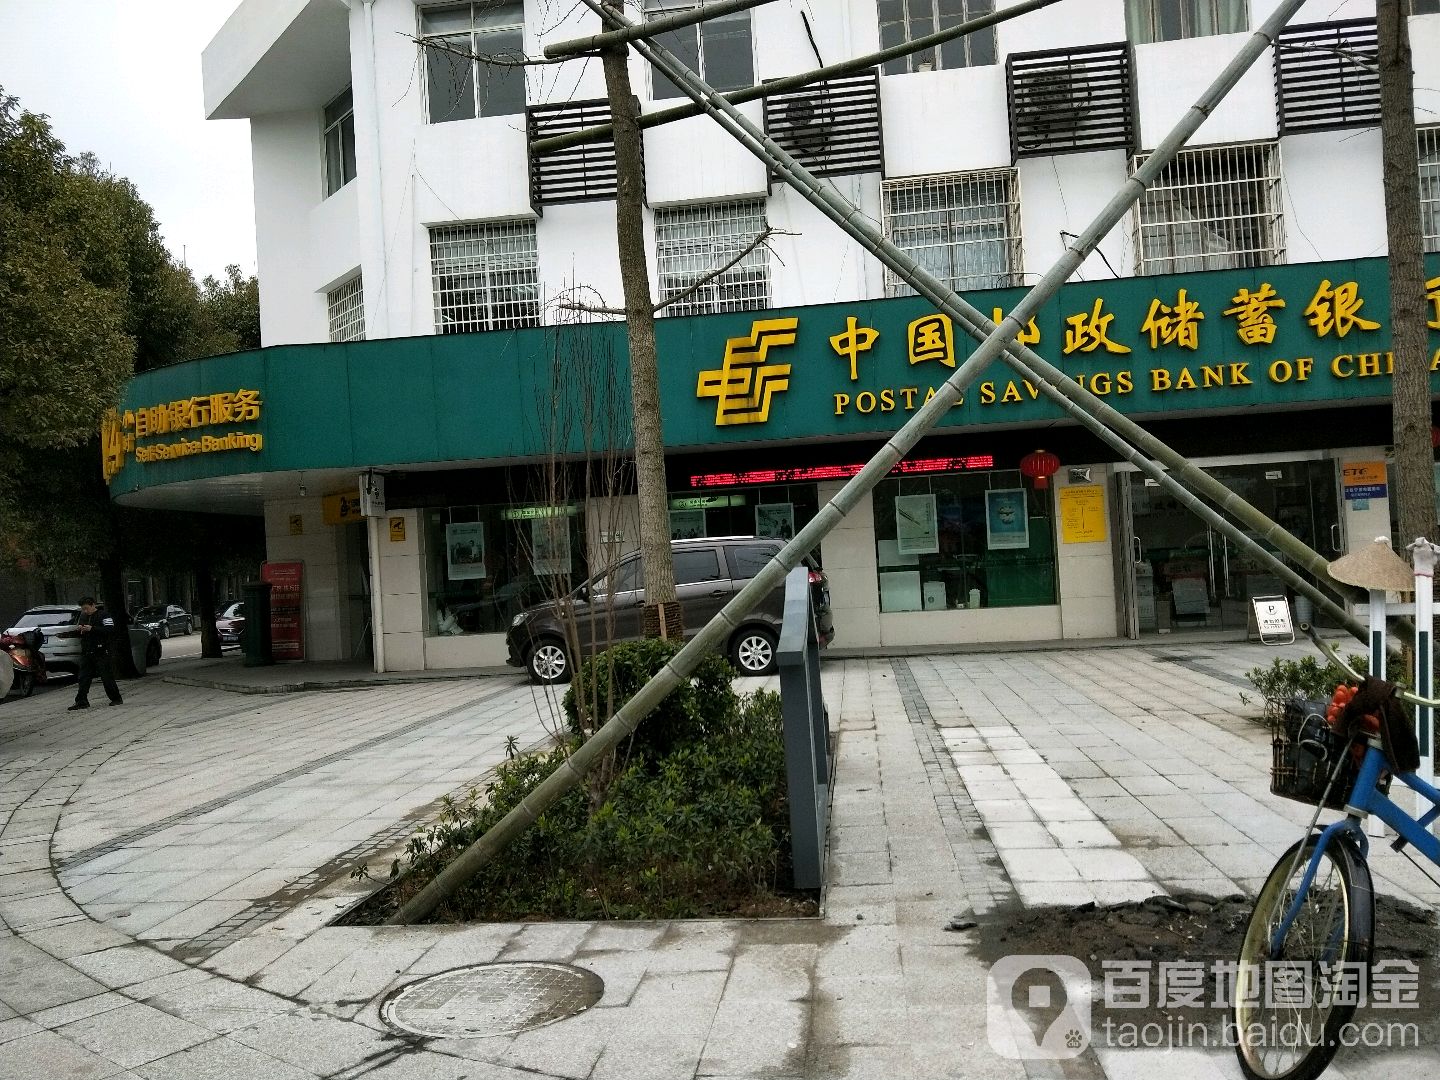 中國郵政儲蓄銀行24小時自助銀行服務(掌起鎮支行)